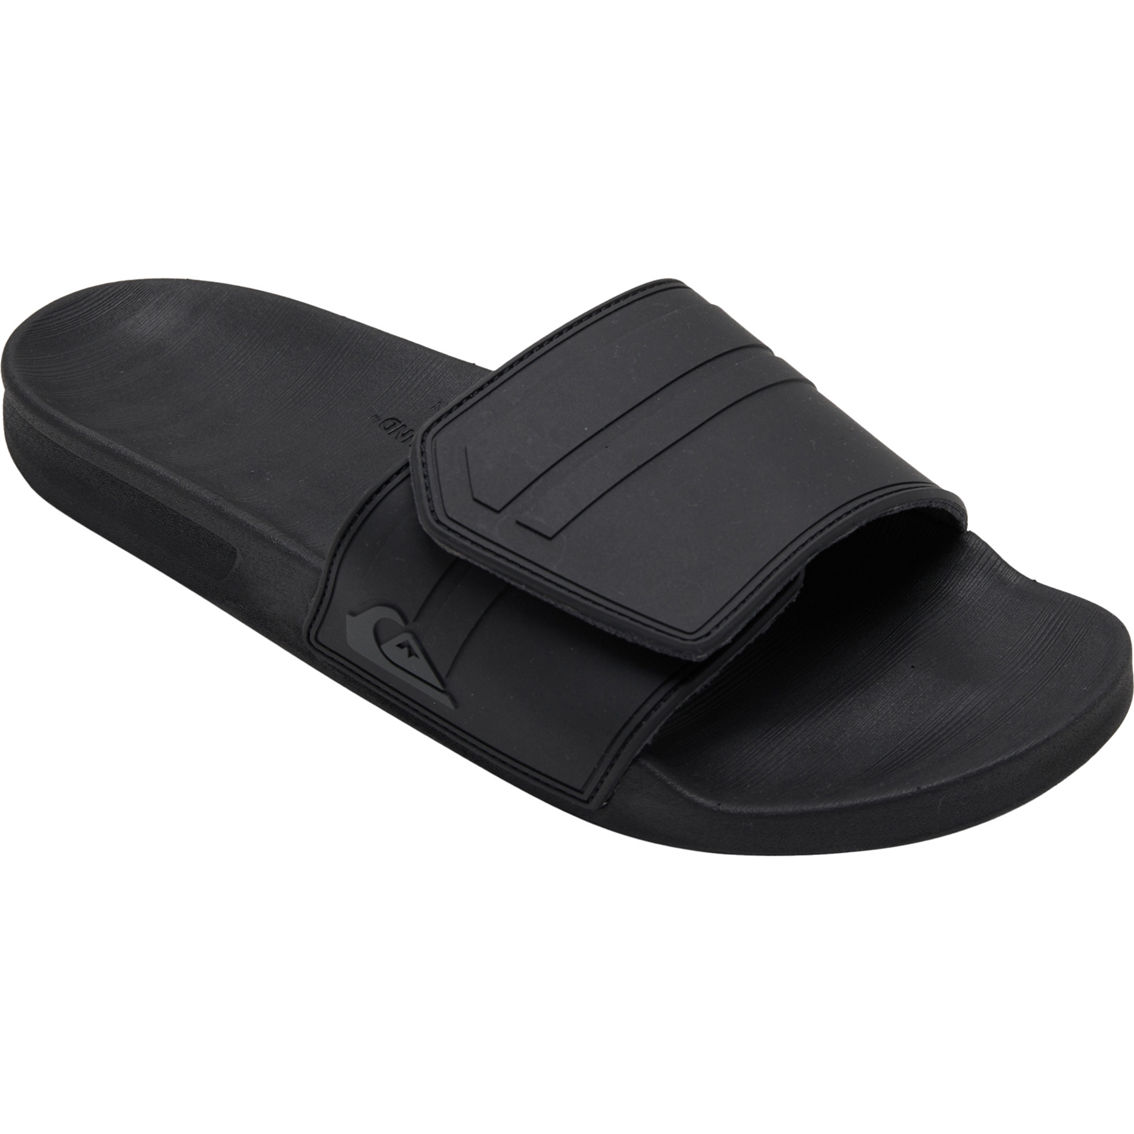 Quiksilver Men's Rivi Slide Adjust Sliders Sandals - Image 1 of 3